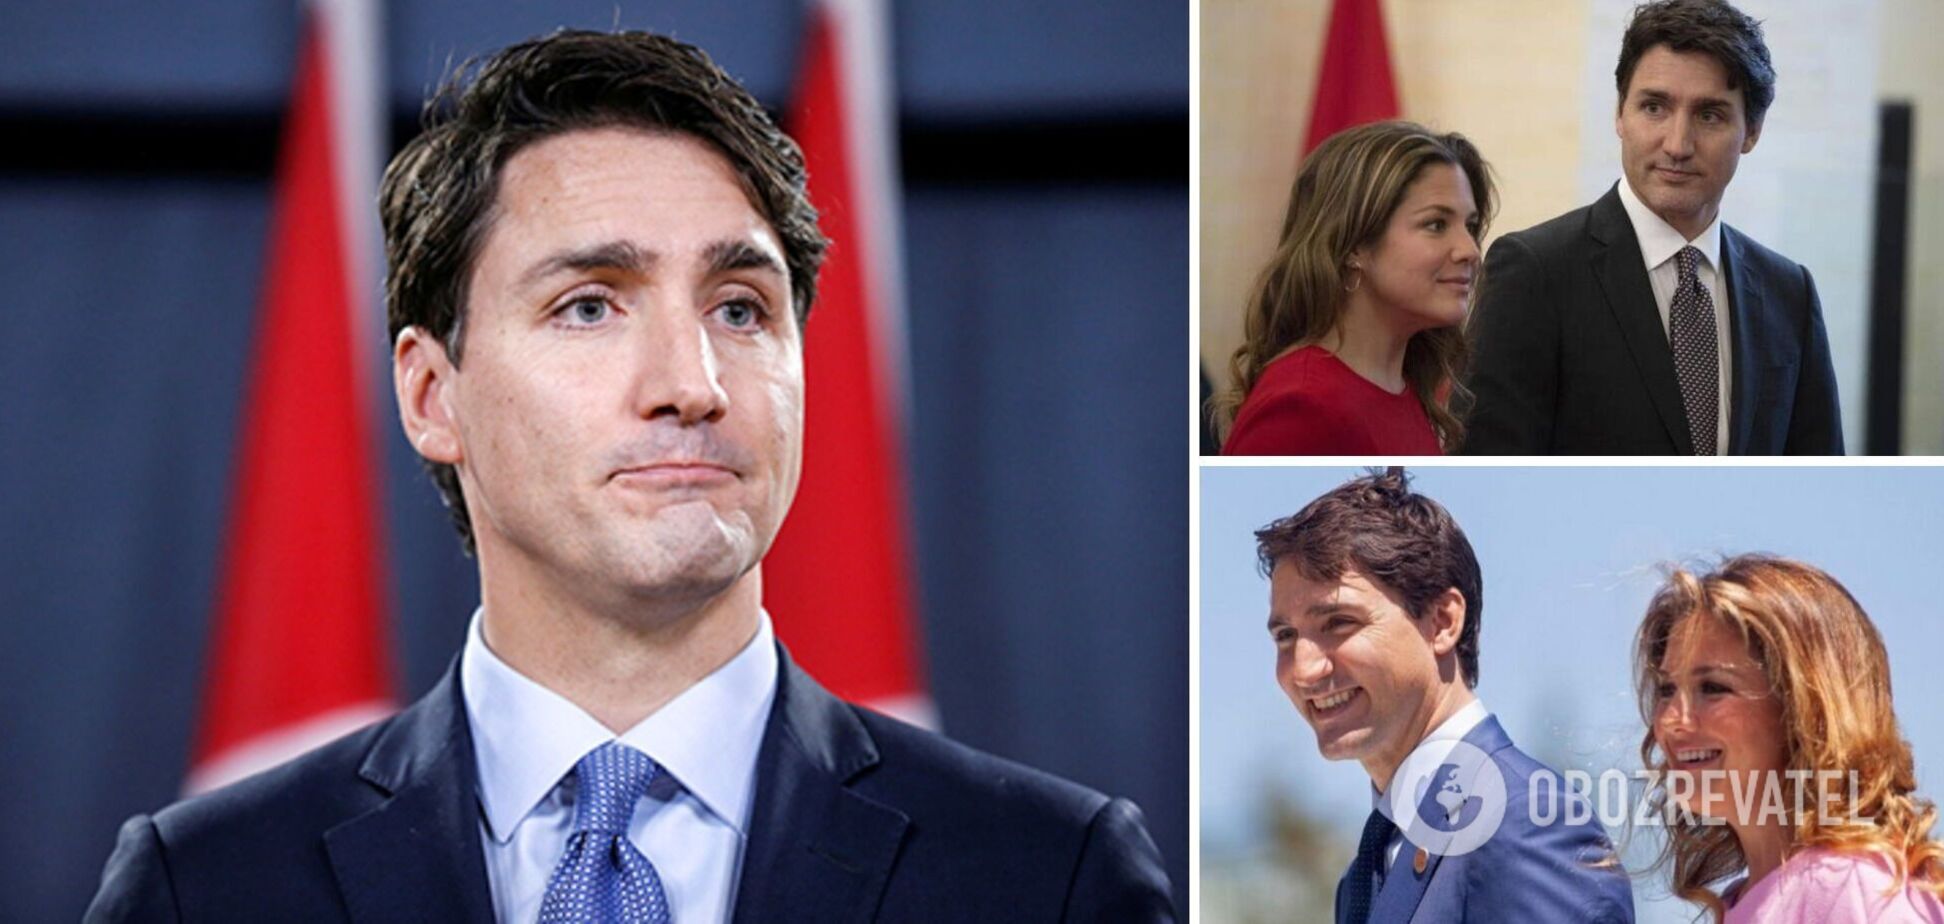 Прем'єр-міністр Канади Трюдо розлучився з дружиною через 18 років шлюбу: що відомо